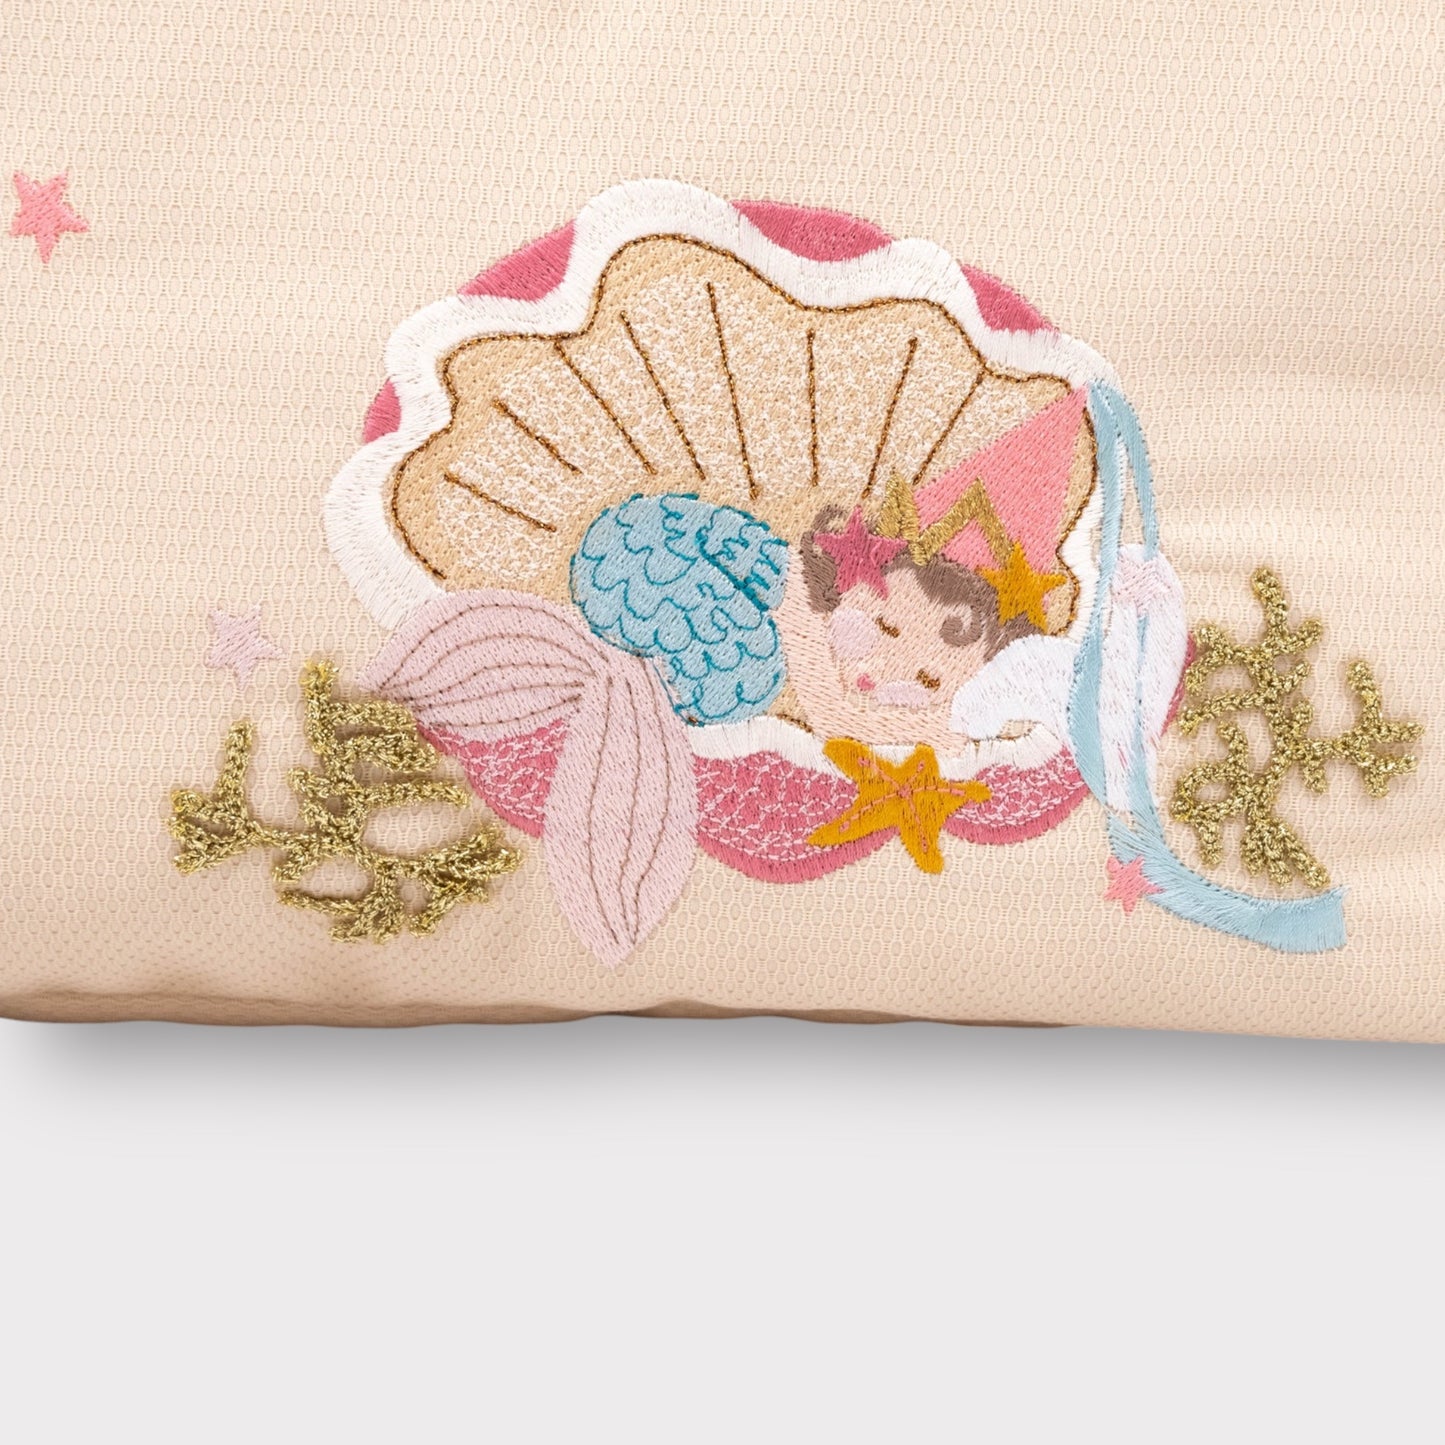 Borsone in tessuto Morbido "Sirenetta"- Neonati & Bambini | Embroidery store di Letizia